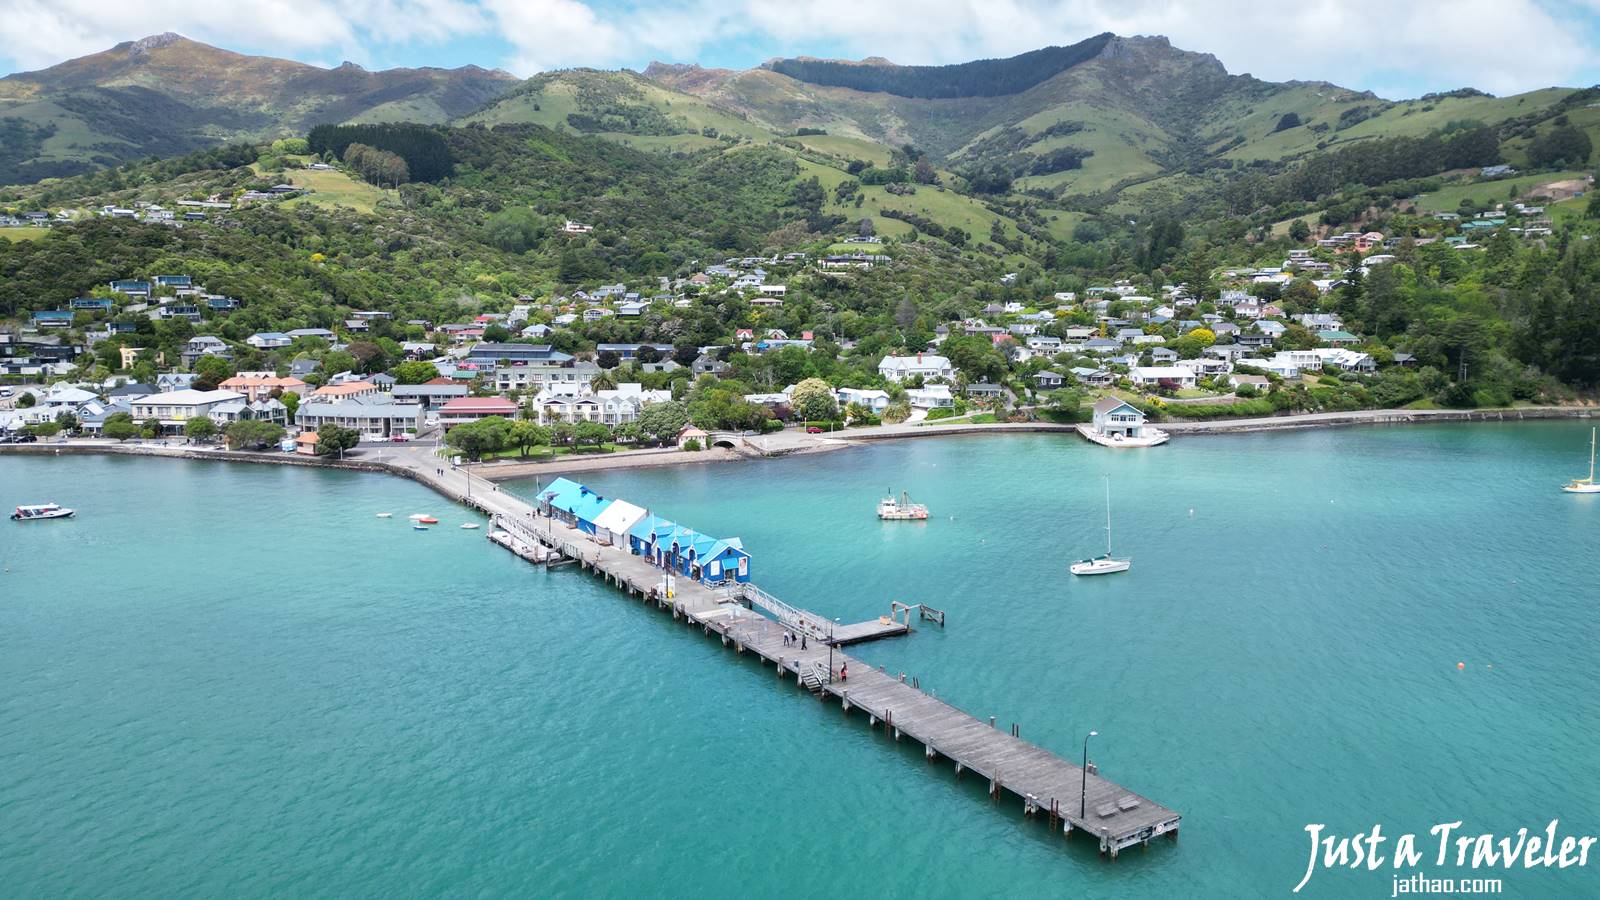 紐西蘭-紐西蘭南島-紐西蘭景點-推薦-阿卡羅阿-Akaroa-紐西蘭旅遊-紐西蘭自由行-紐西蘭南北島-紐西蘭南島自由行-紐西蘭必玩景點-紐西蘭必去景點-紐西蘭好玩景點-攻略-紐西蘭觀光-紐西蘭行程-環島-紐西蘭旅行-New-Zealand-Tourist-Attraction